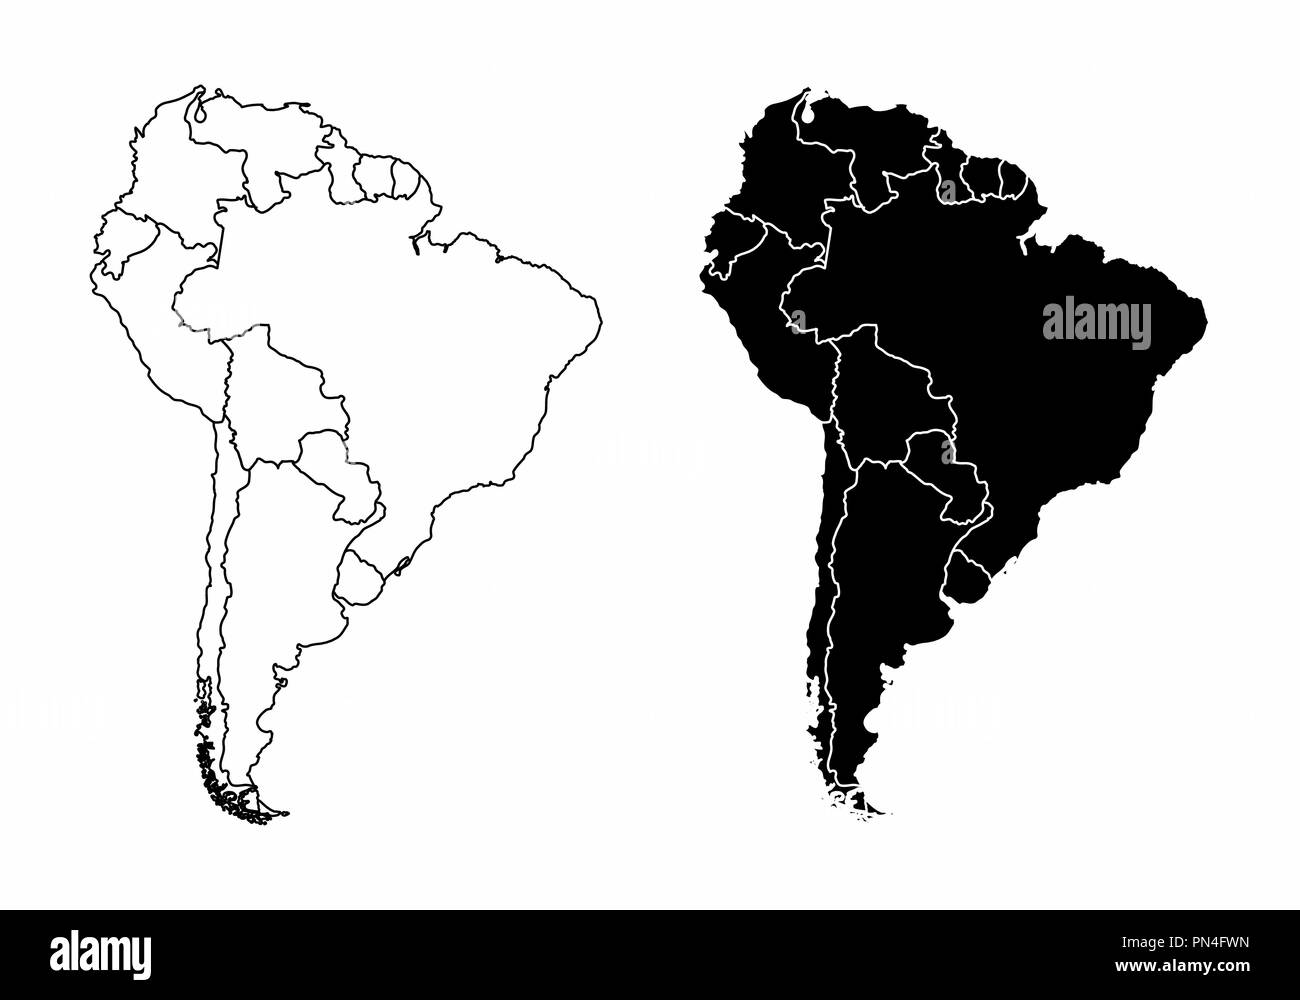 Cartes de la simplification de l'Amérique du Sud avec les pays frontières. Le noir et blanc donne un aperçu. Illustration de Vecteur